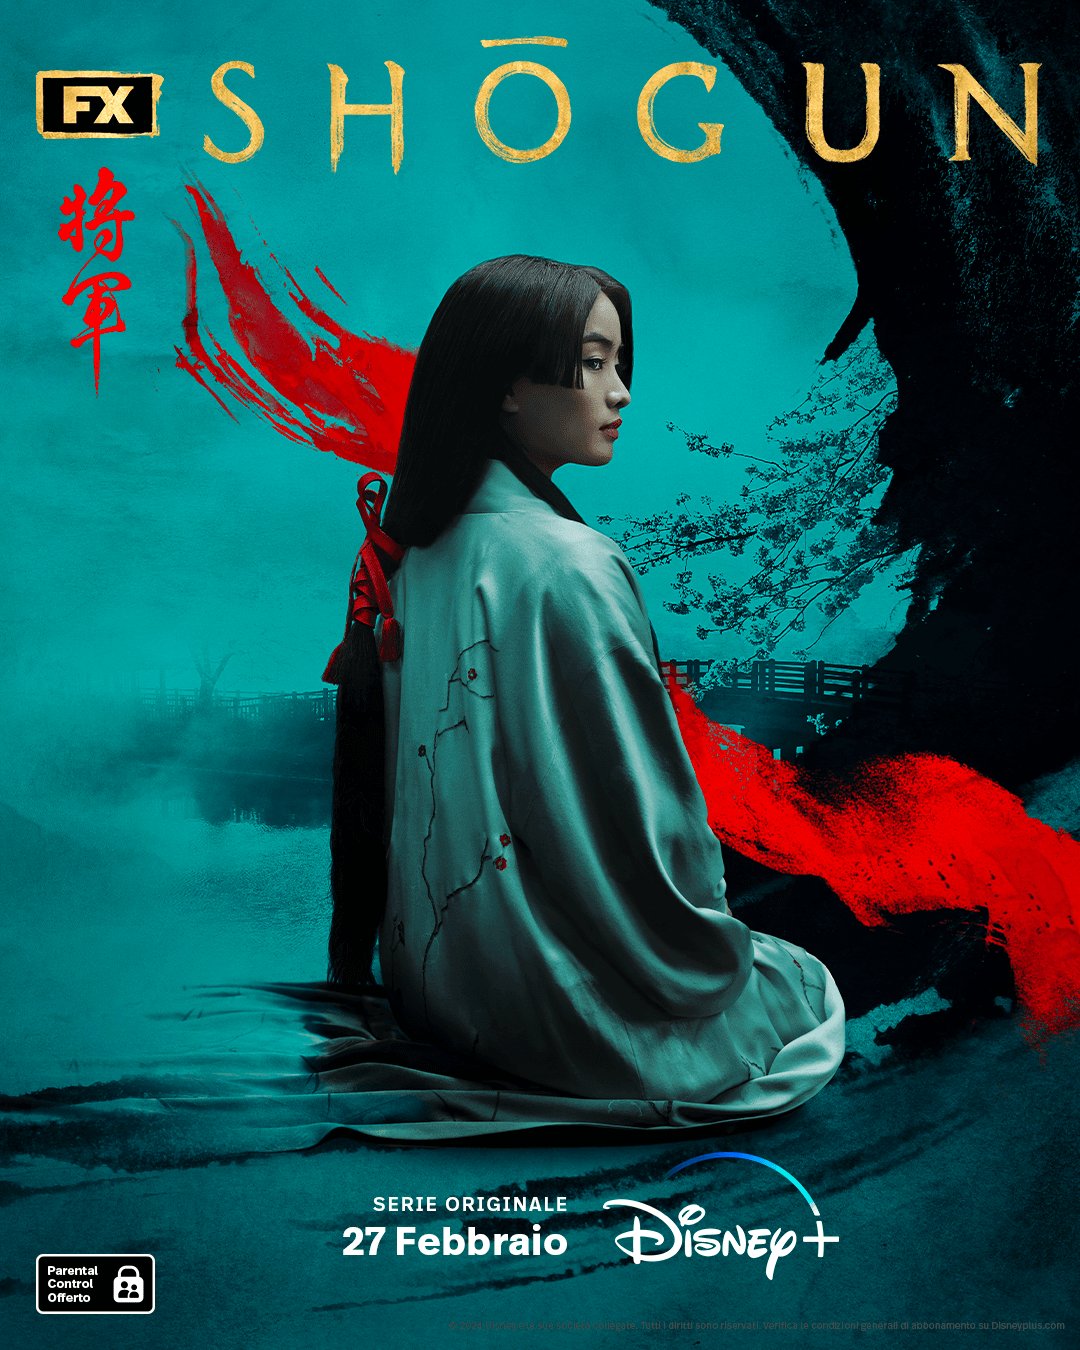 Il poster di Shōgun con Anna Sawai. Crediti: Disney+/FX.